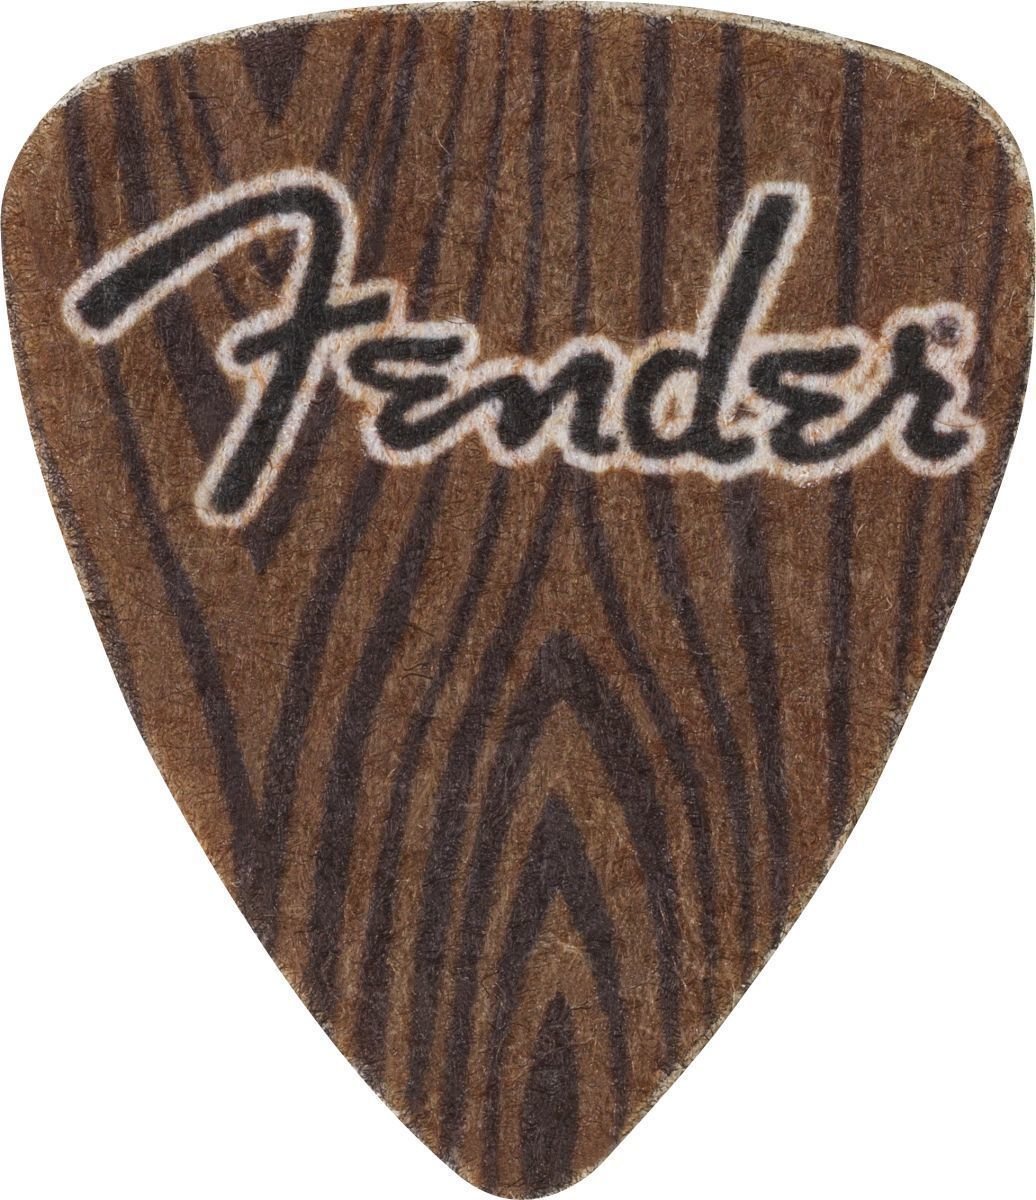 Ukulele plectrum Fender 198-0351-400 Ukulele plectrum